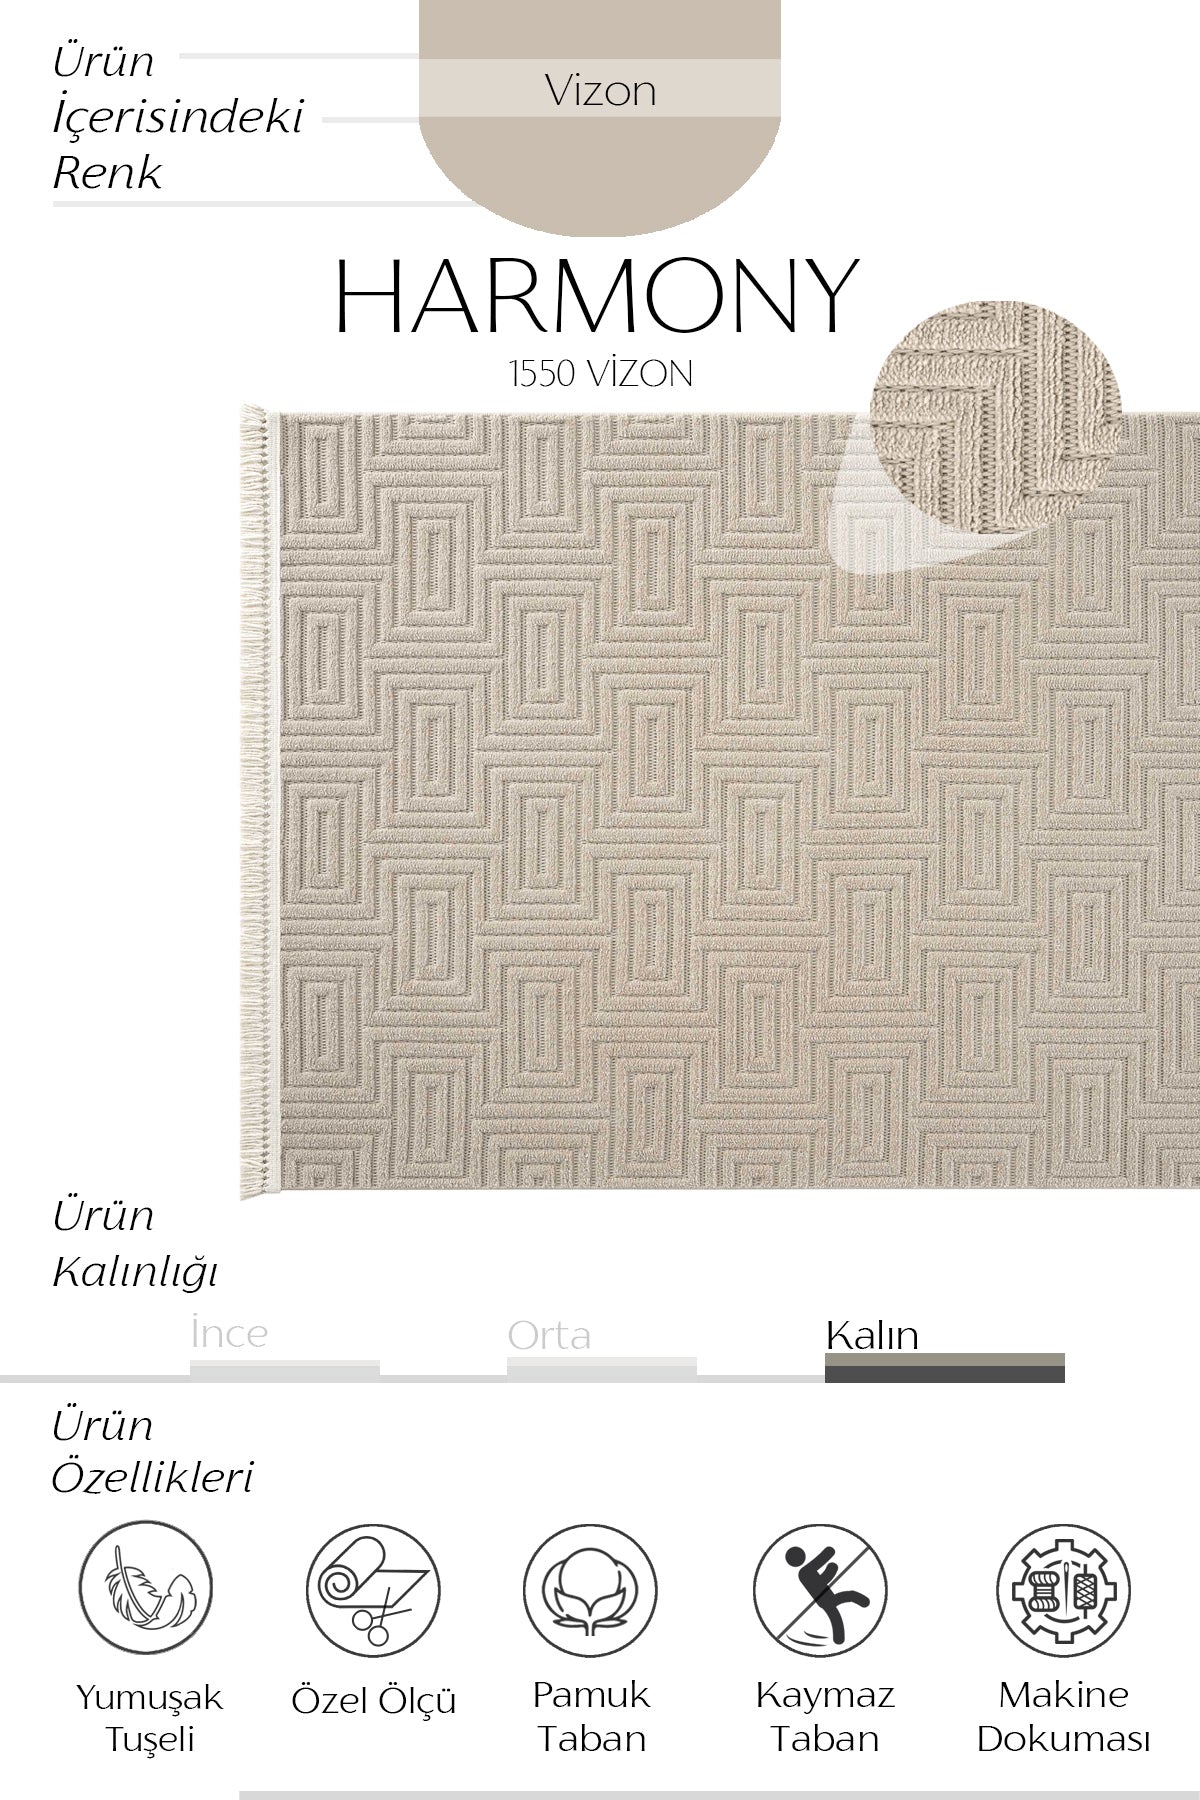 Cool Halı Harmony 1550 Vizon Yumuşak Tuşeli Modern Kesme Halı